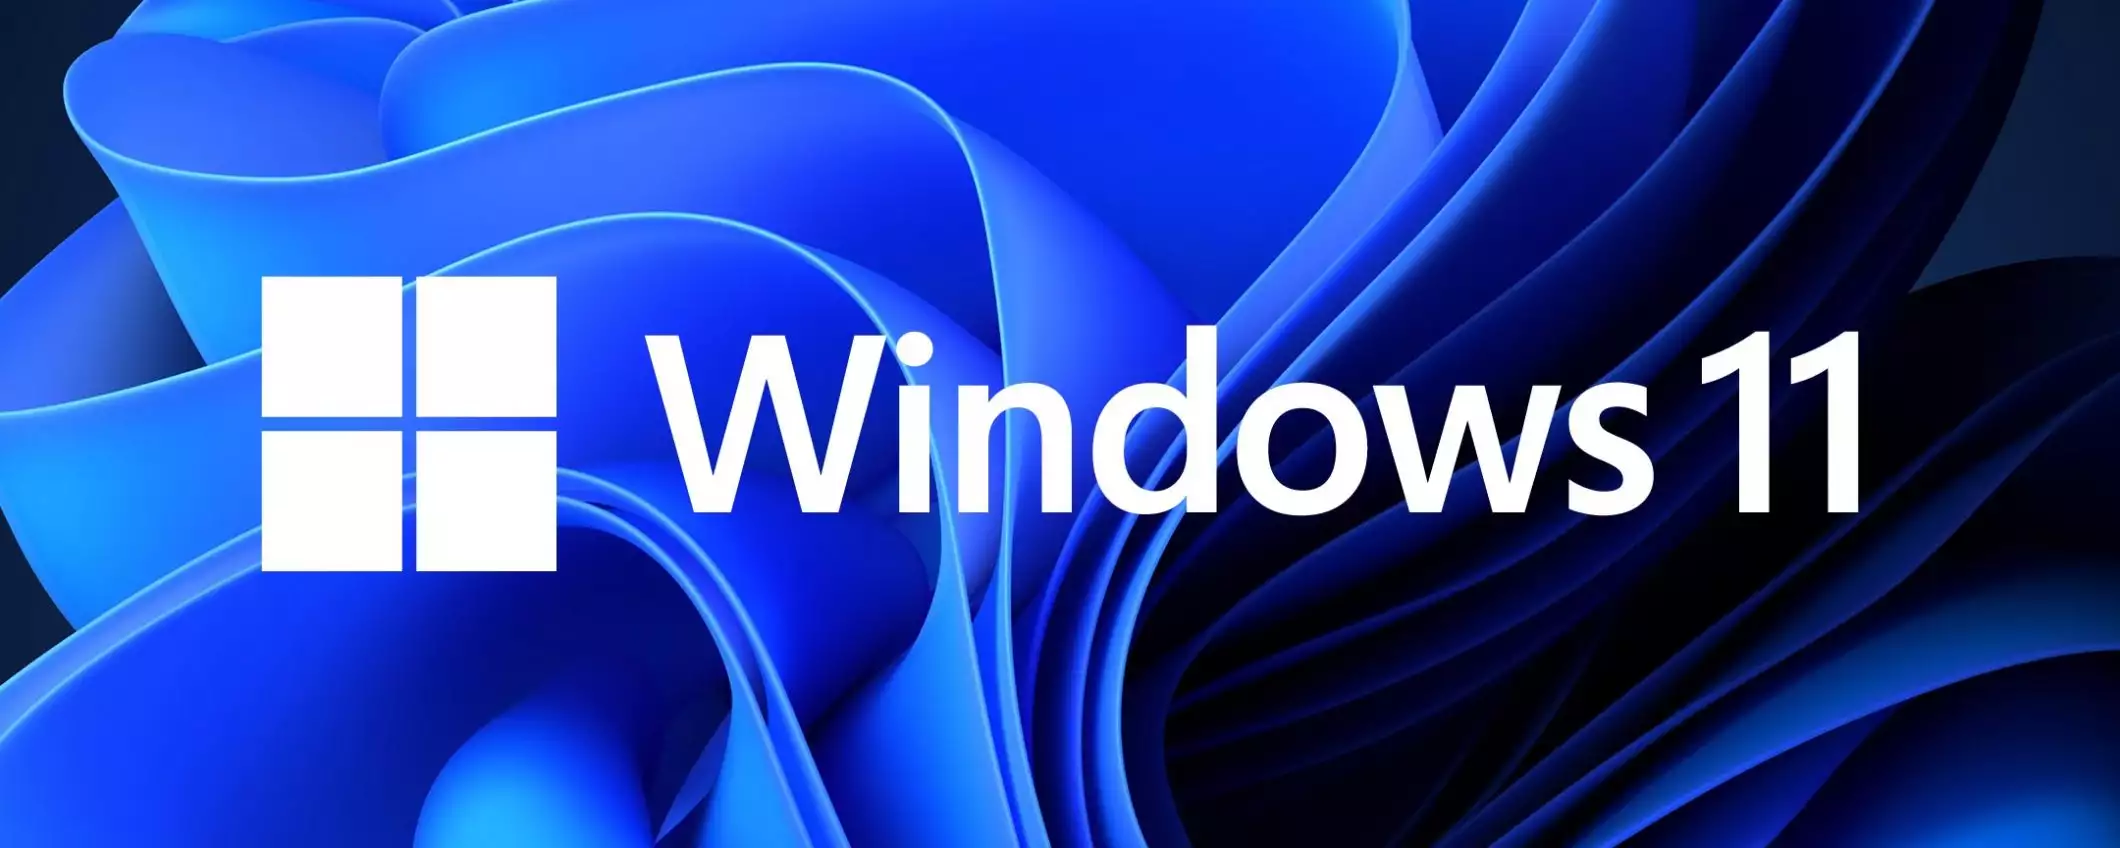 Windows 11: è questo il nuovo suono di avvio